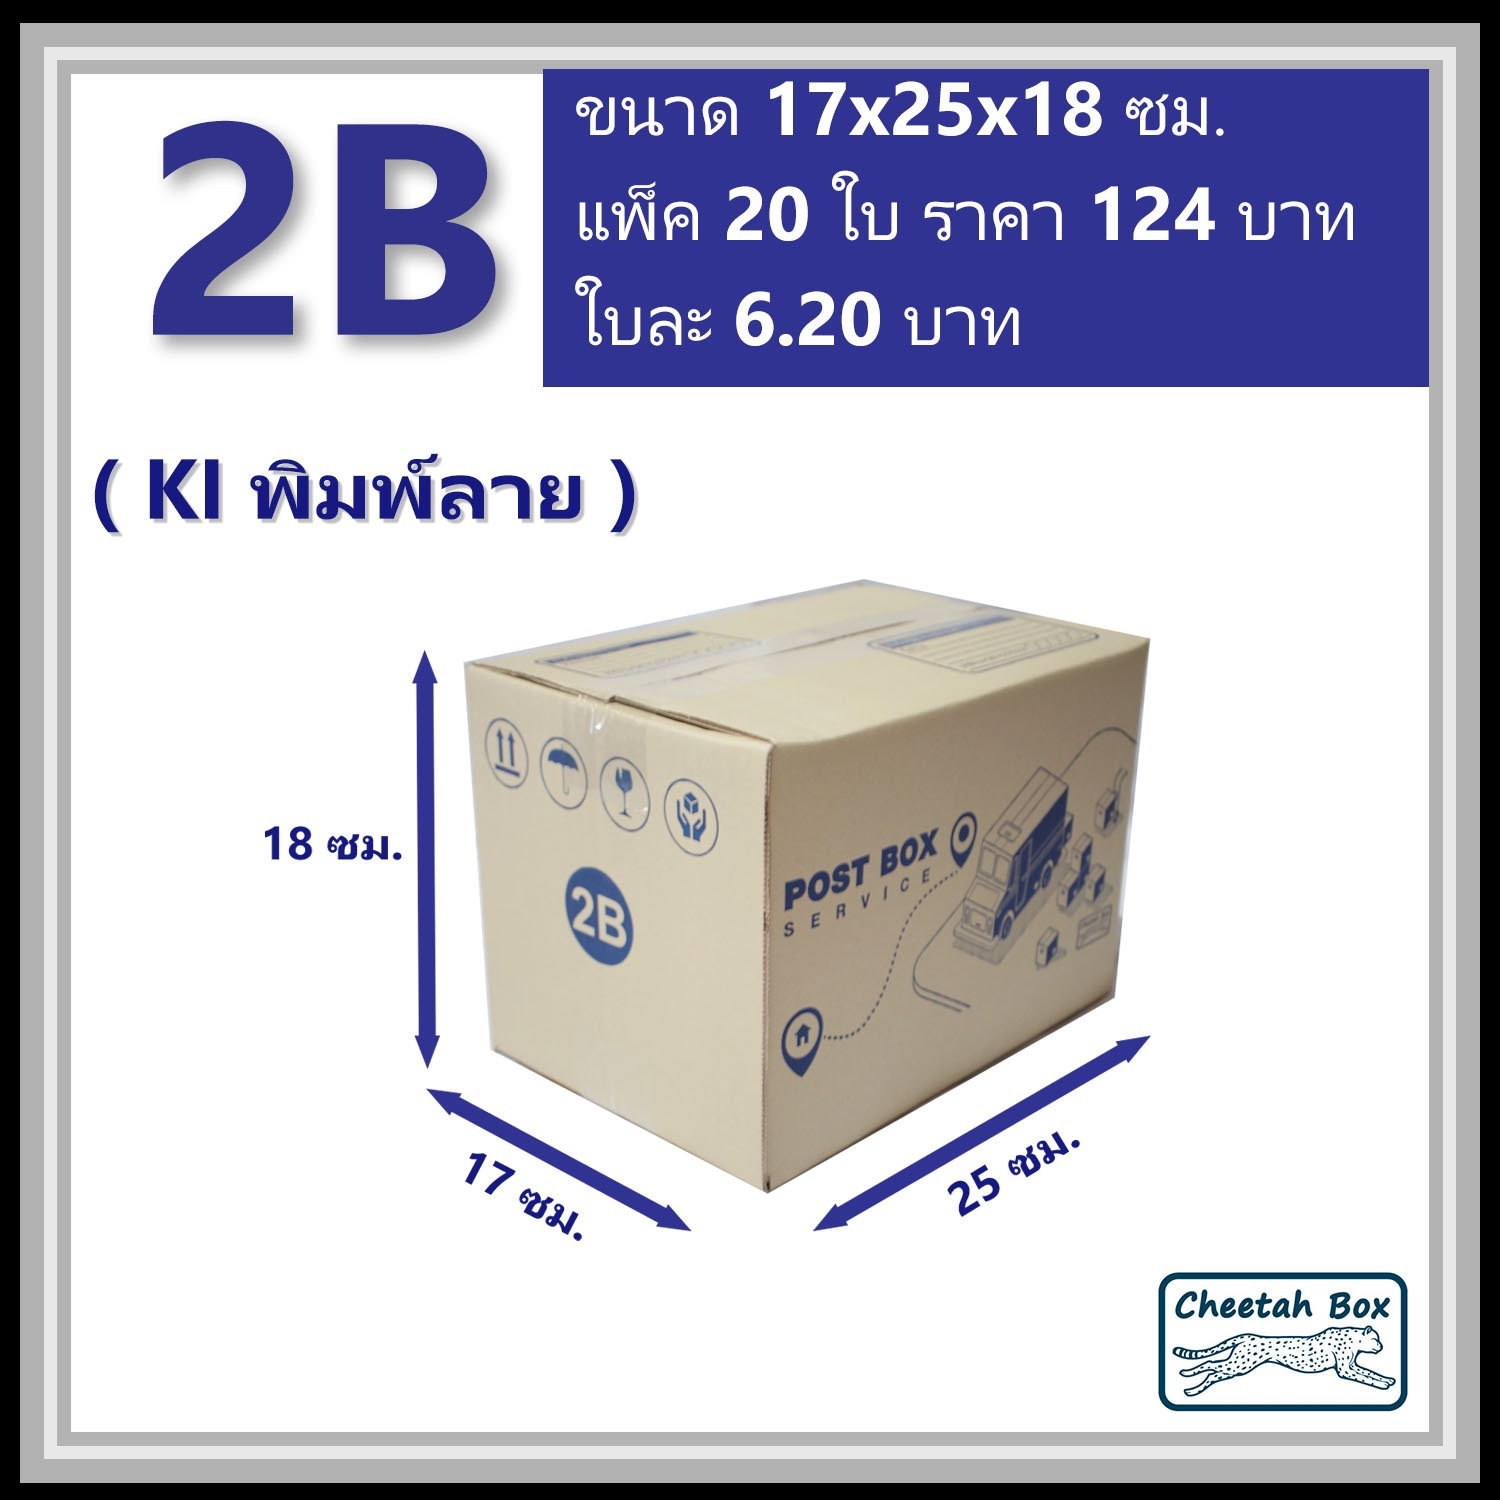 กล่องไปรษณีย์ 2B (Cheetah Box ขนาด 17*25*18 CM)